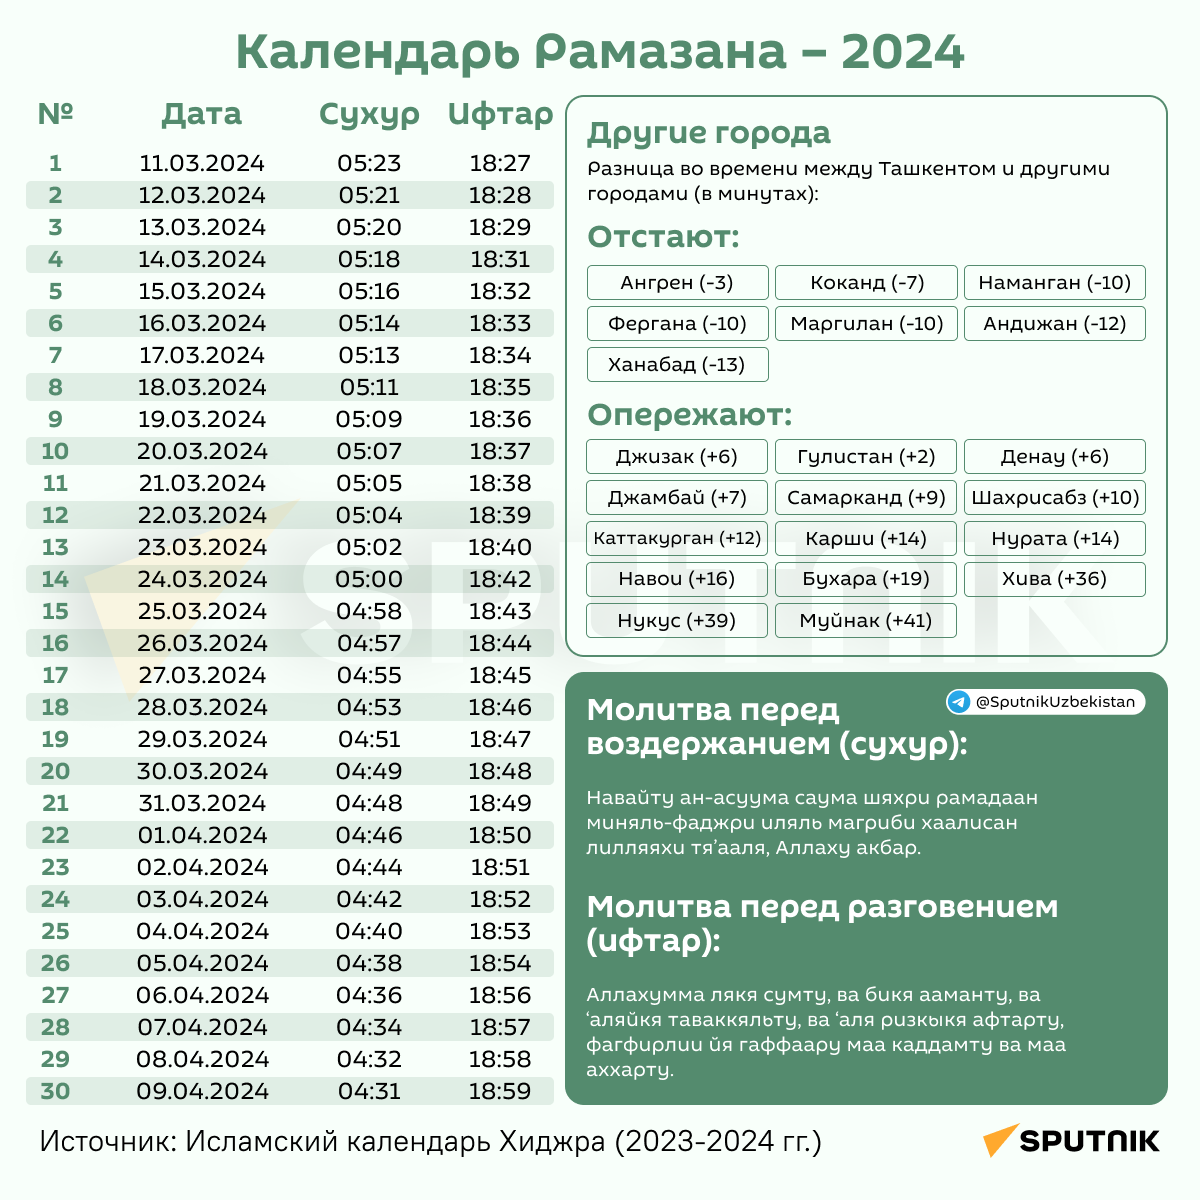 Календарь Рамазана 2024 - Sputnik Узбекистан